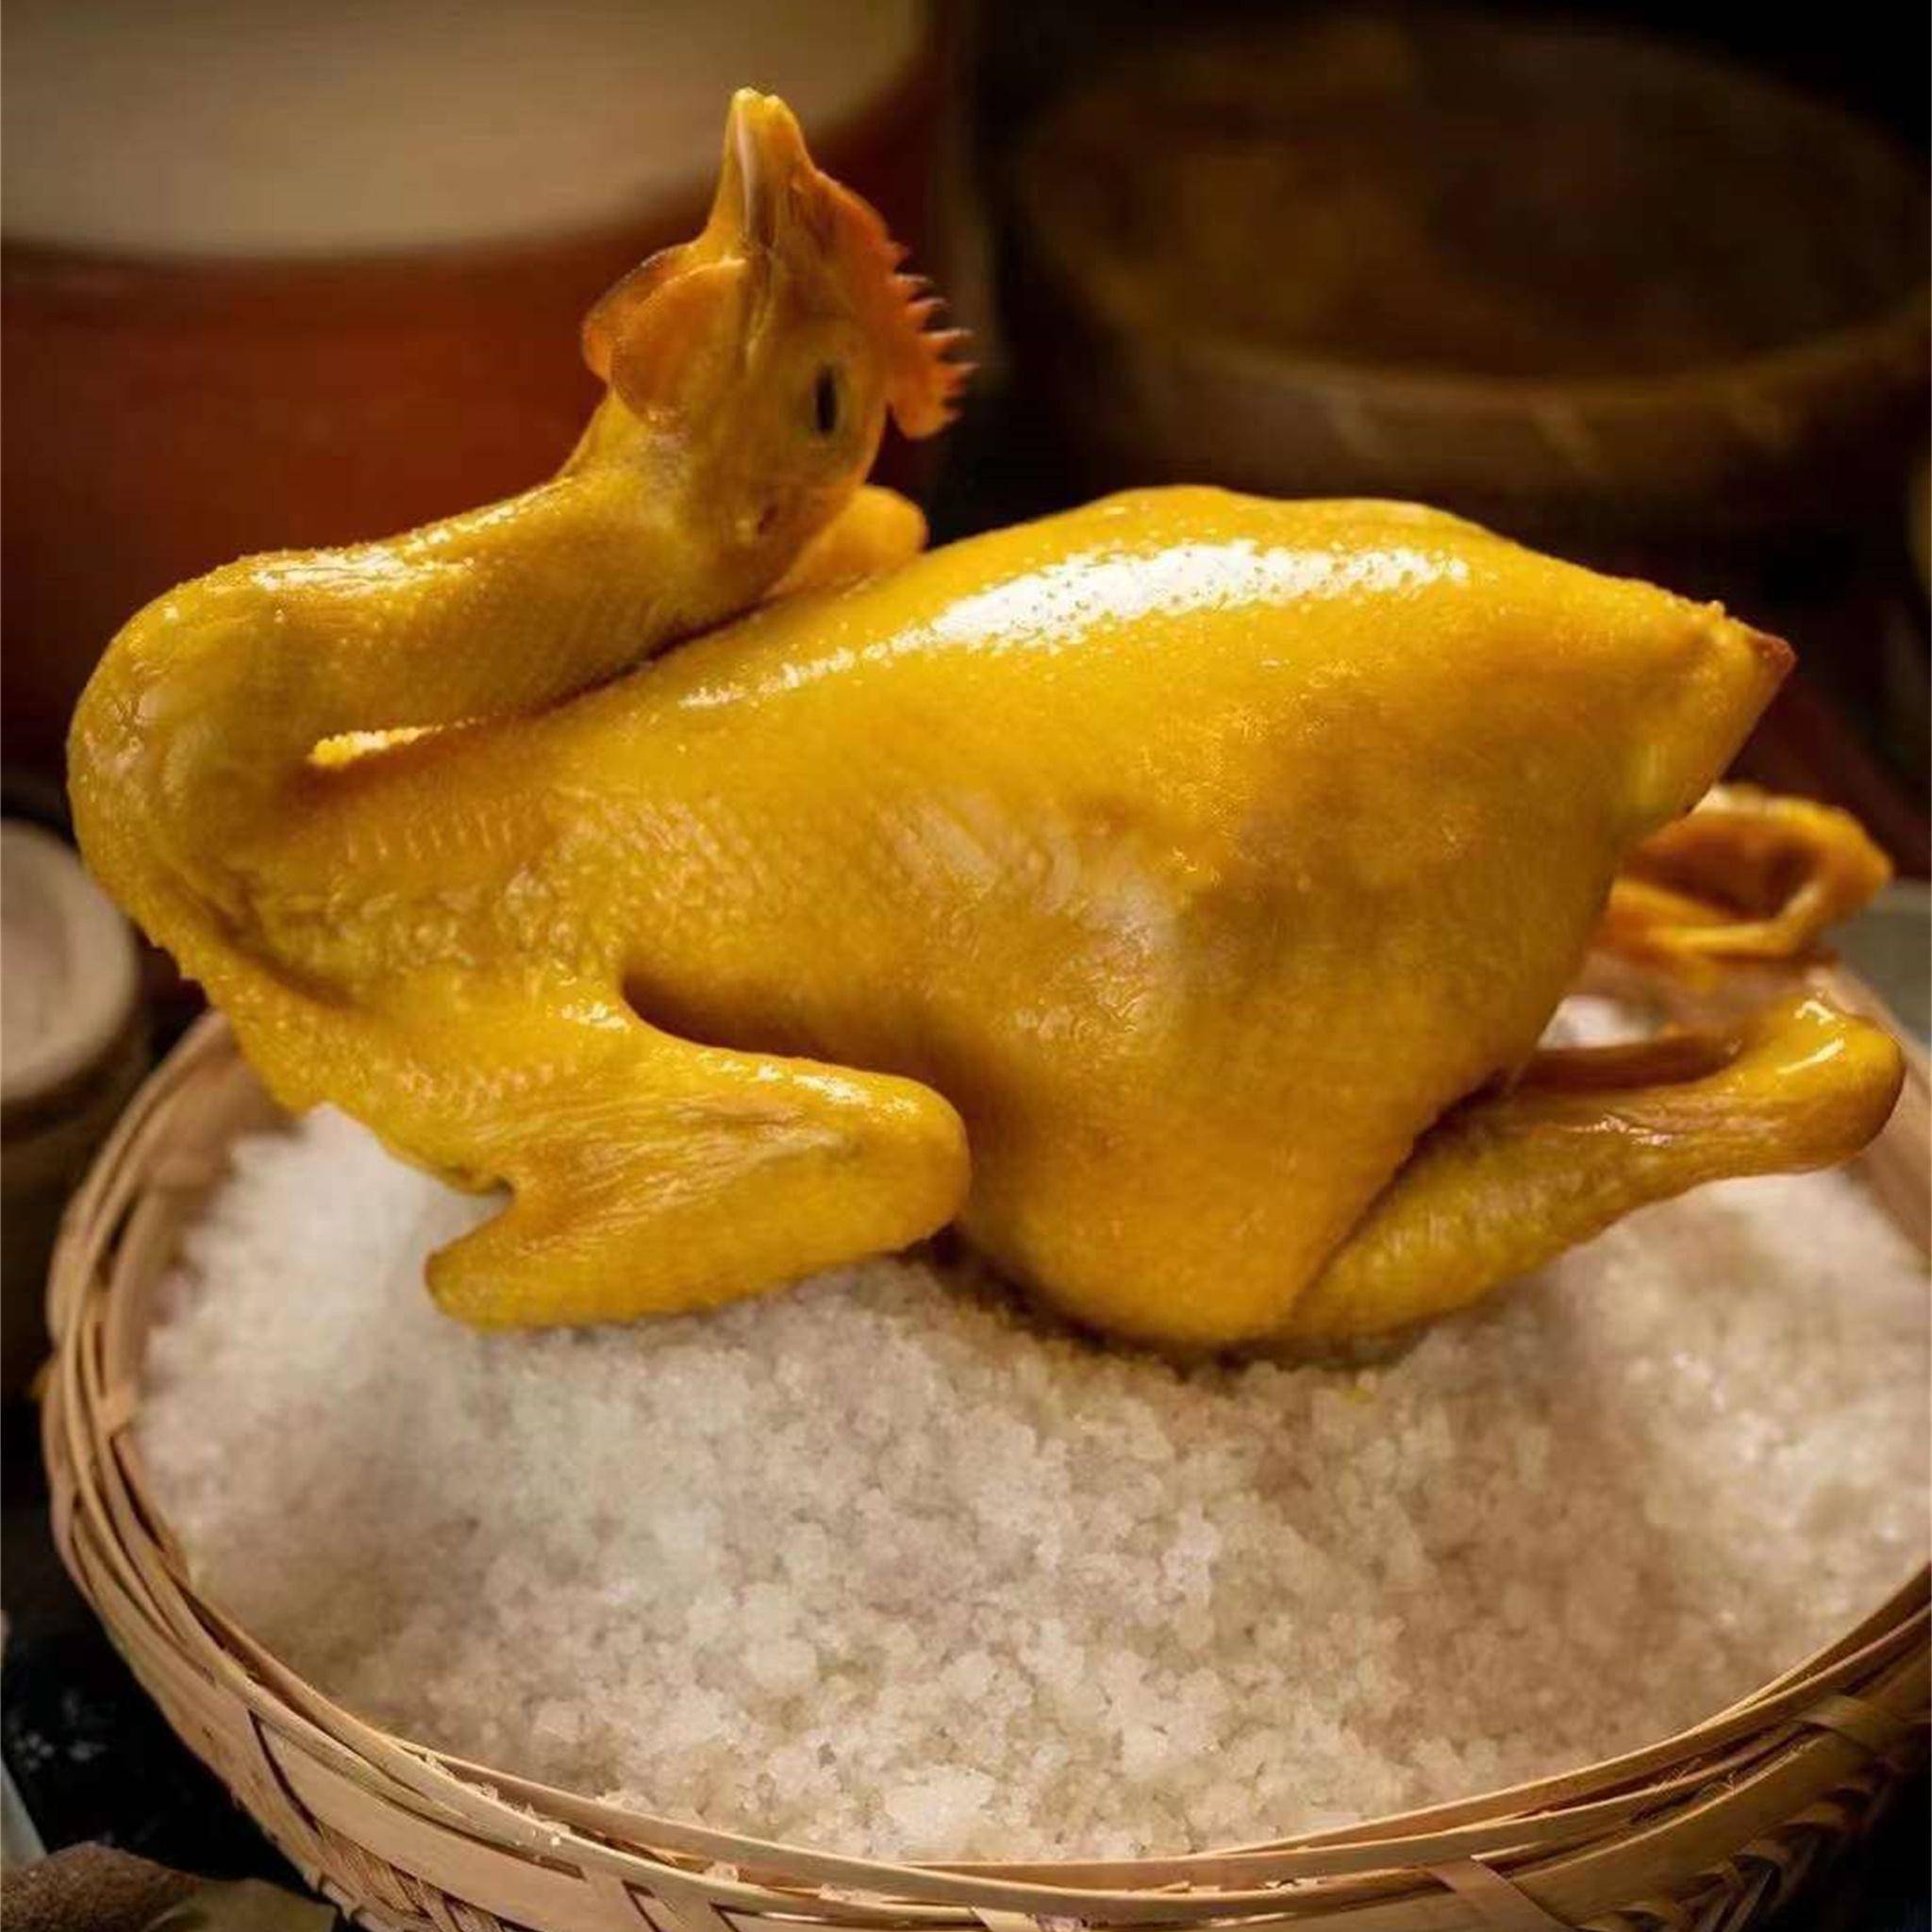 东江盐焗鸡:东江盐焗鸡是广东河源的一道传统名菜,也是客家菜系中的